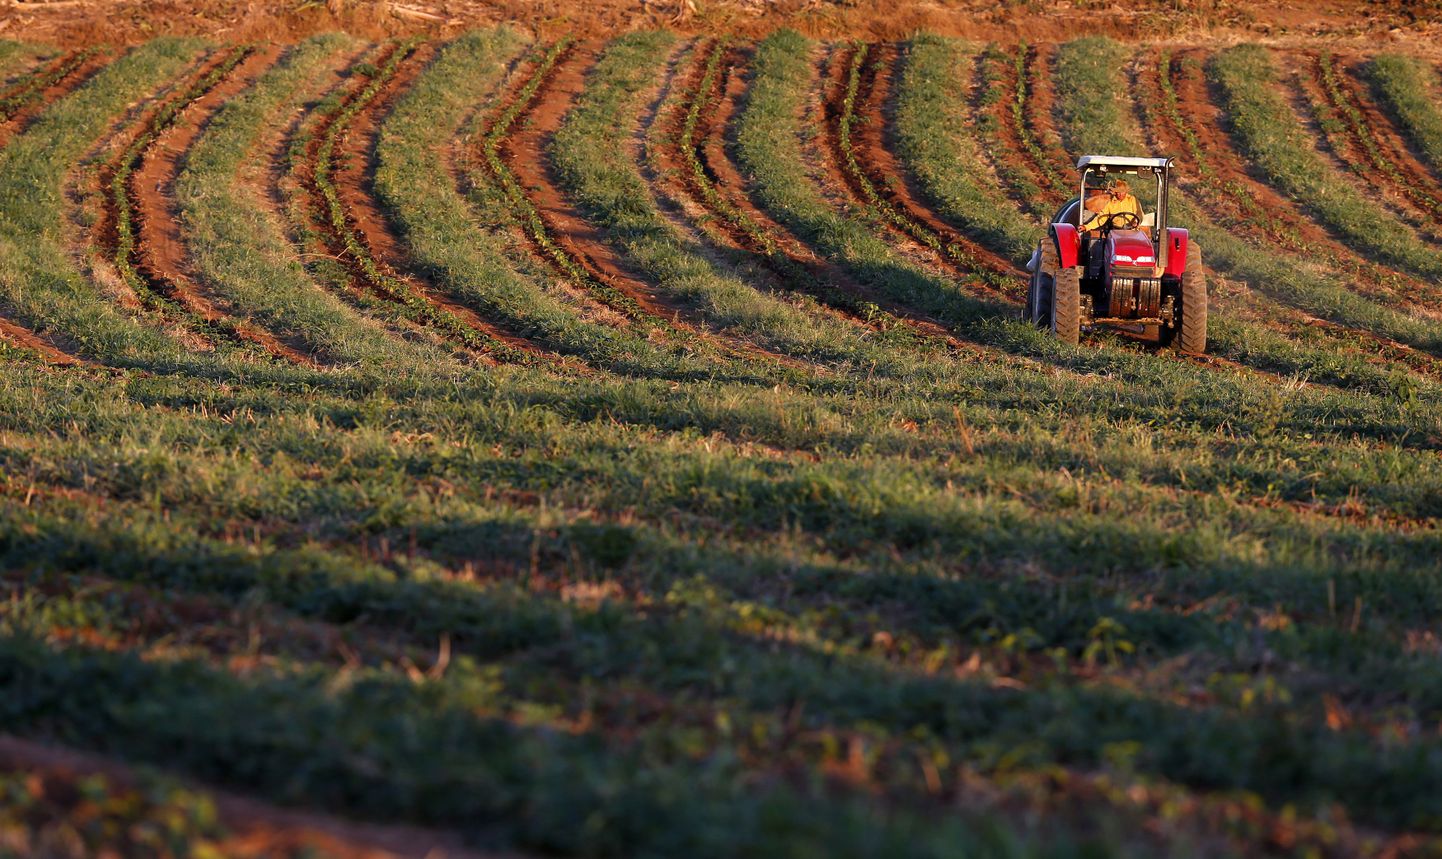 Traktor Brasiilia kohviistanduses noori taimi kastmas.